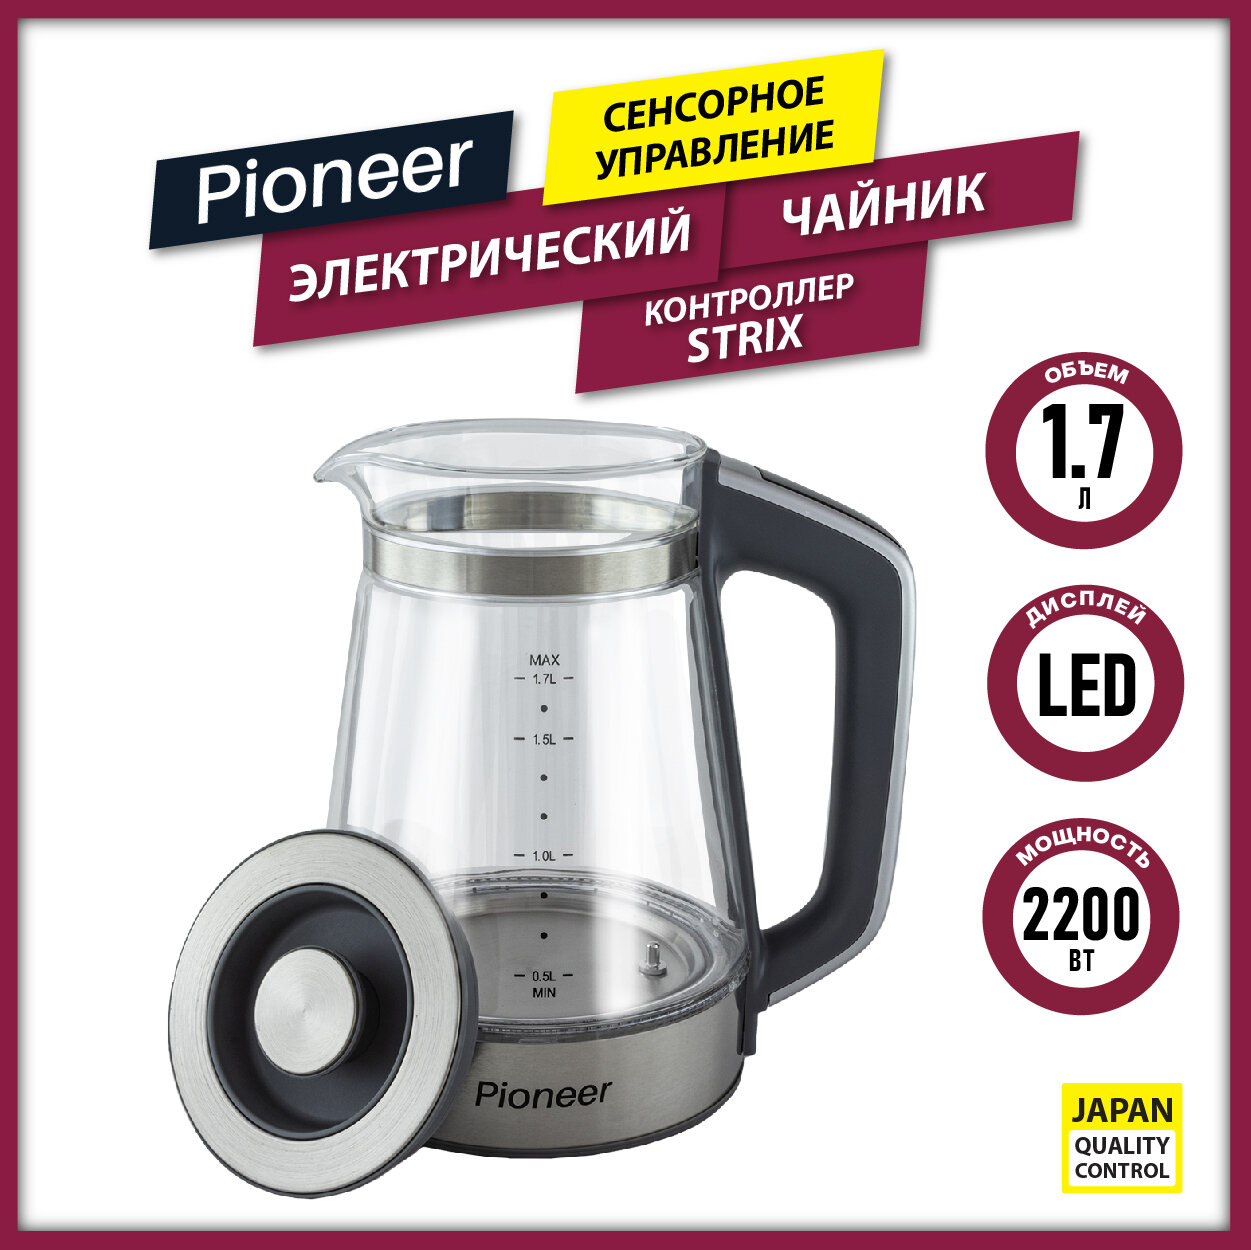 Электрический чайник Pioneer KE815G graphite из термостойкого стекла с сенсорным управлением, 1,7 л, контроллер STRIX, подсветка, 2200 Вт